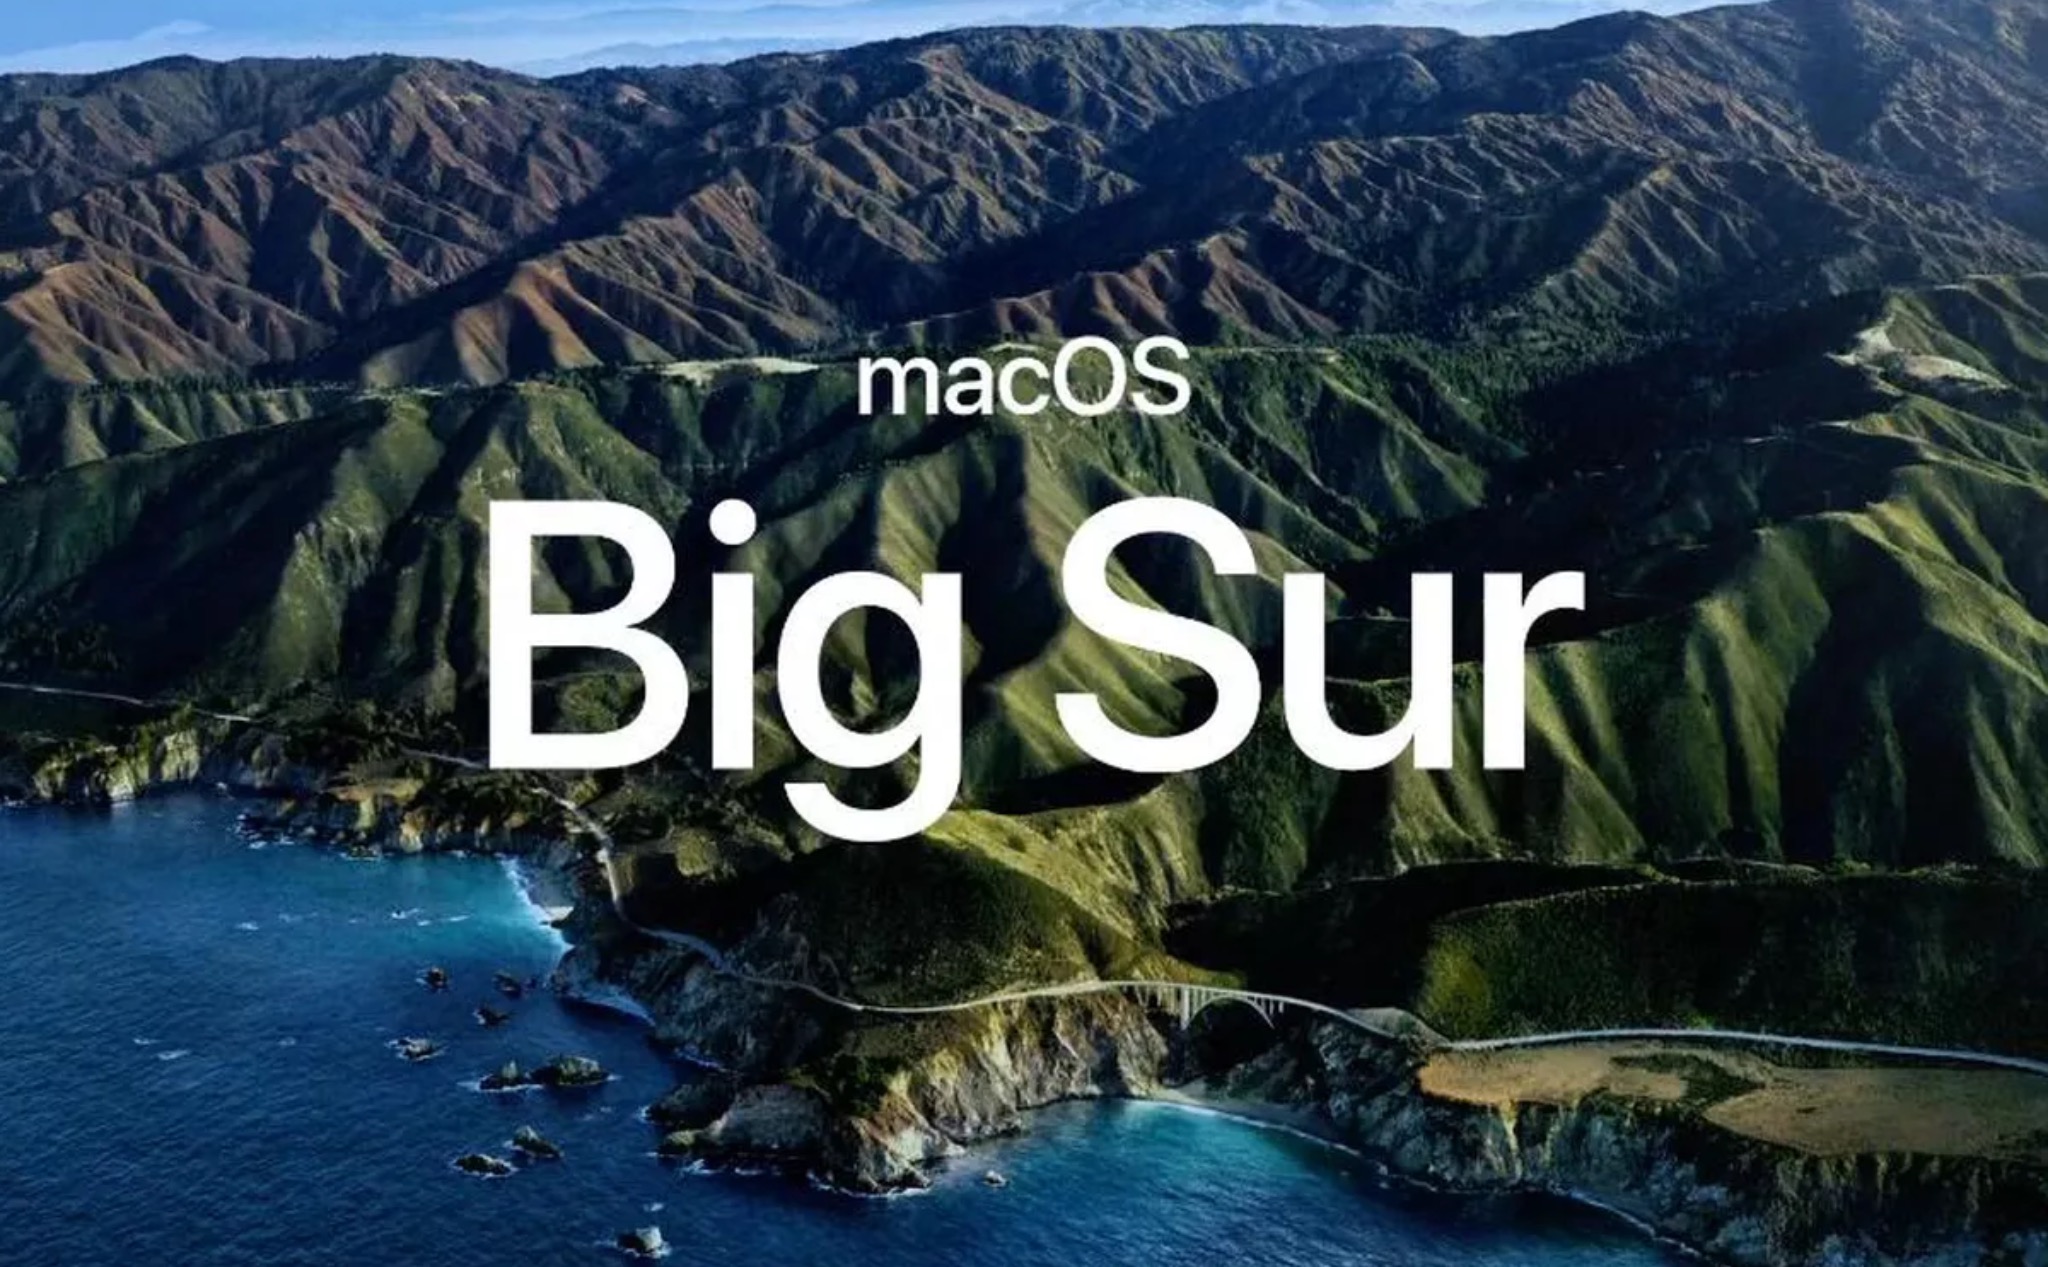 macOS Big Sur chấm dứt gần hai thập kỷ tồn tại của OS X